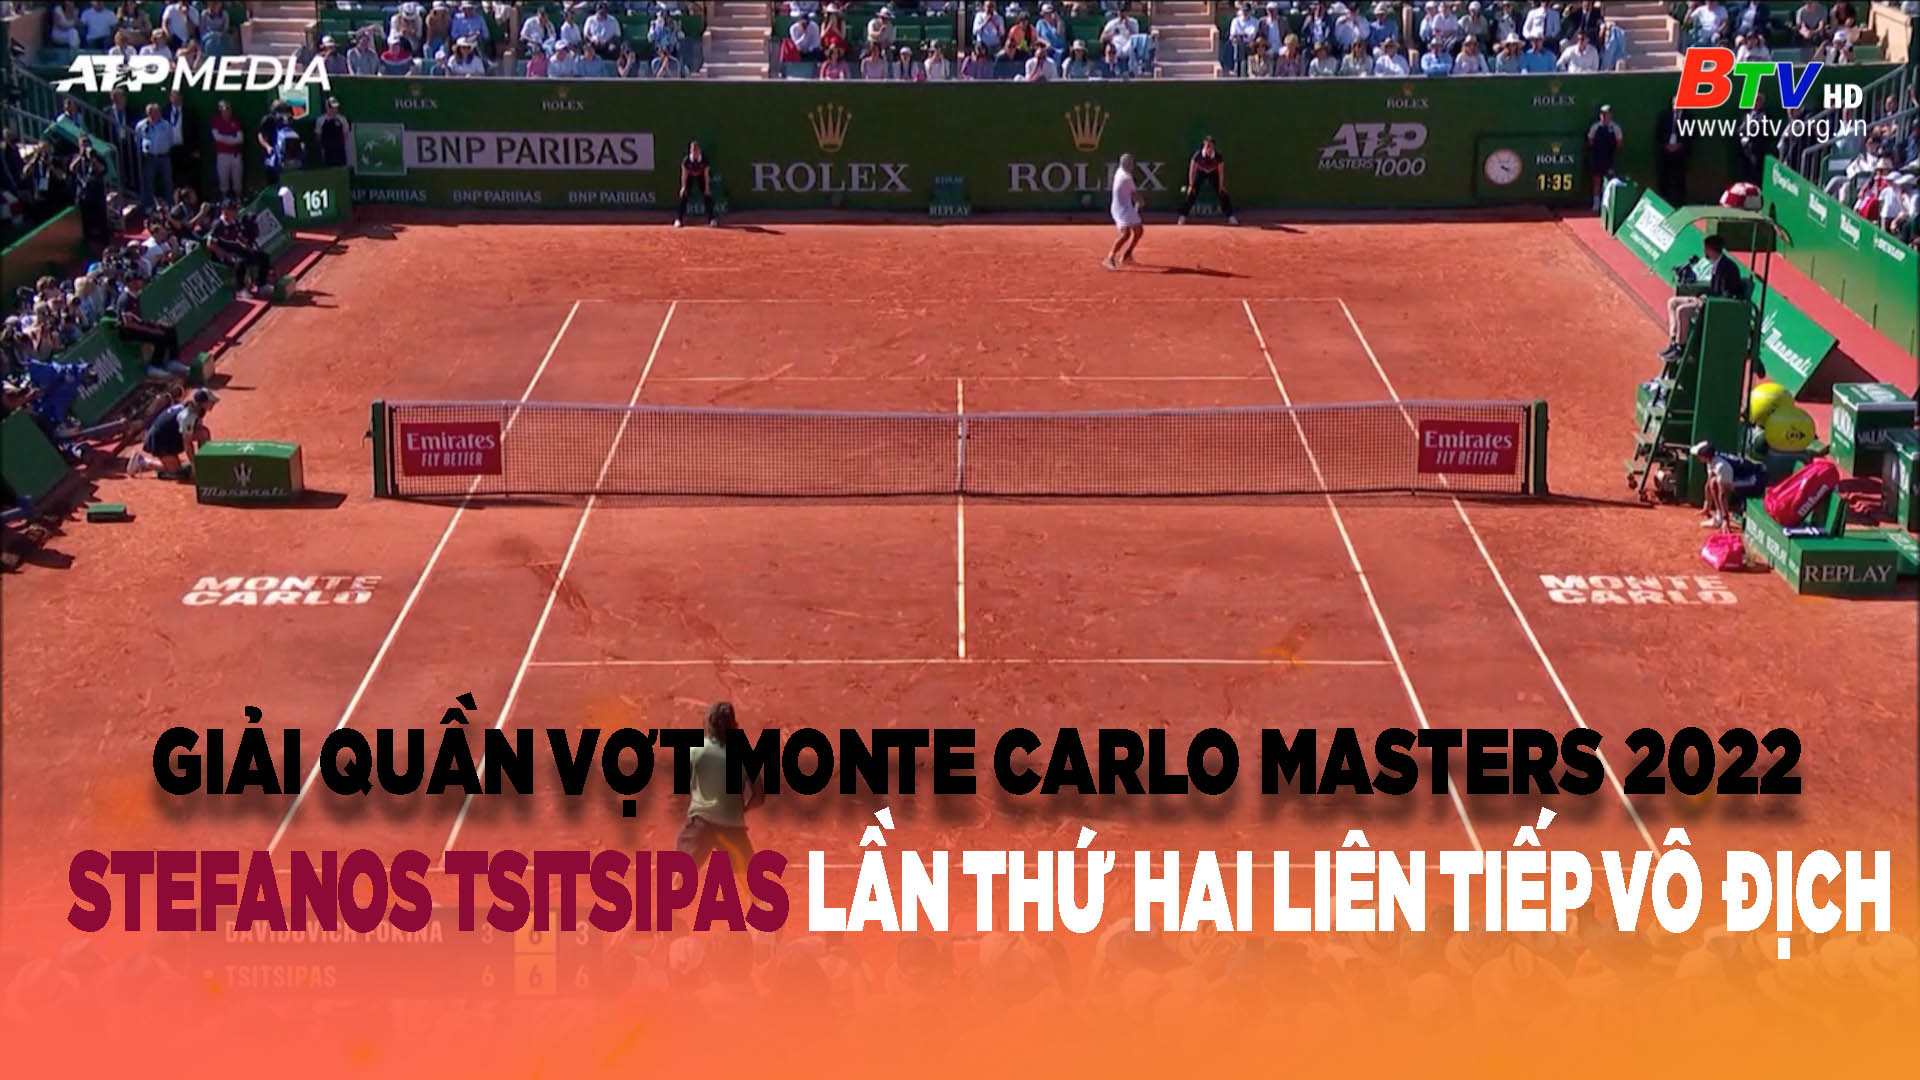 Setafanos Tsitsipas lần thứ hai liên tiếp vô địch Giải Quần vợt Monte Carlo Masters 2022